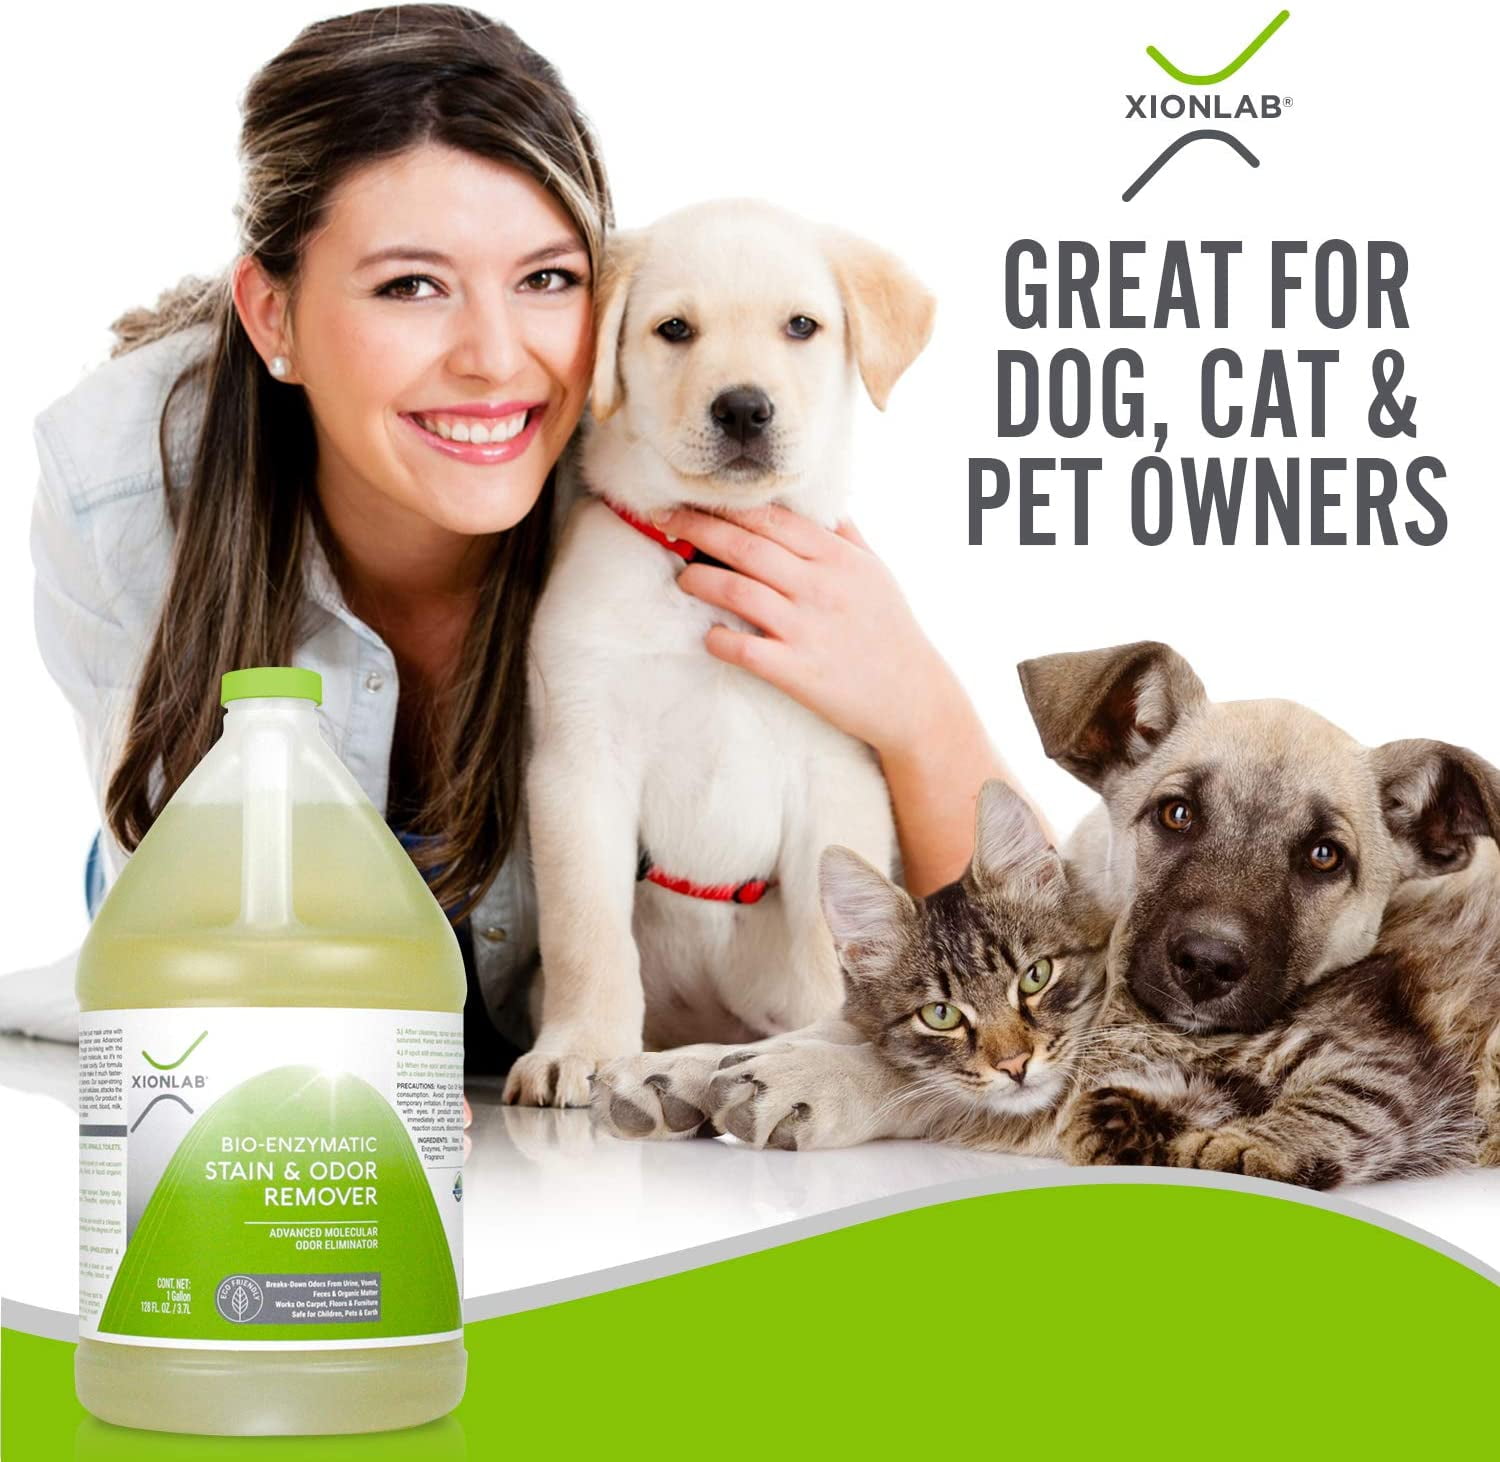 Charlie & Max Odor Eliminator for Strong Odor Enzyme Cleaner for Dog Urine and Poop, Cat Urine Enzyme Cleaner Destroyer Profe